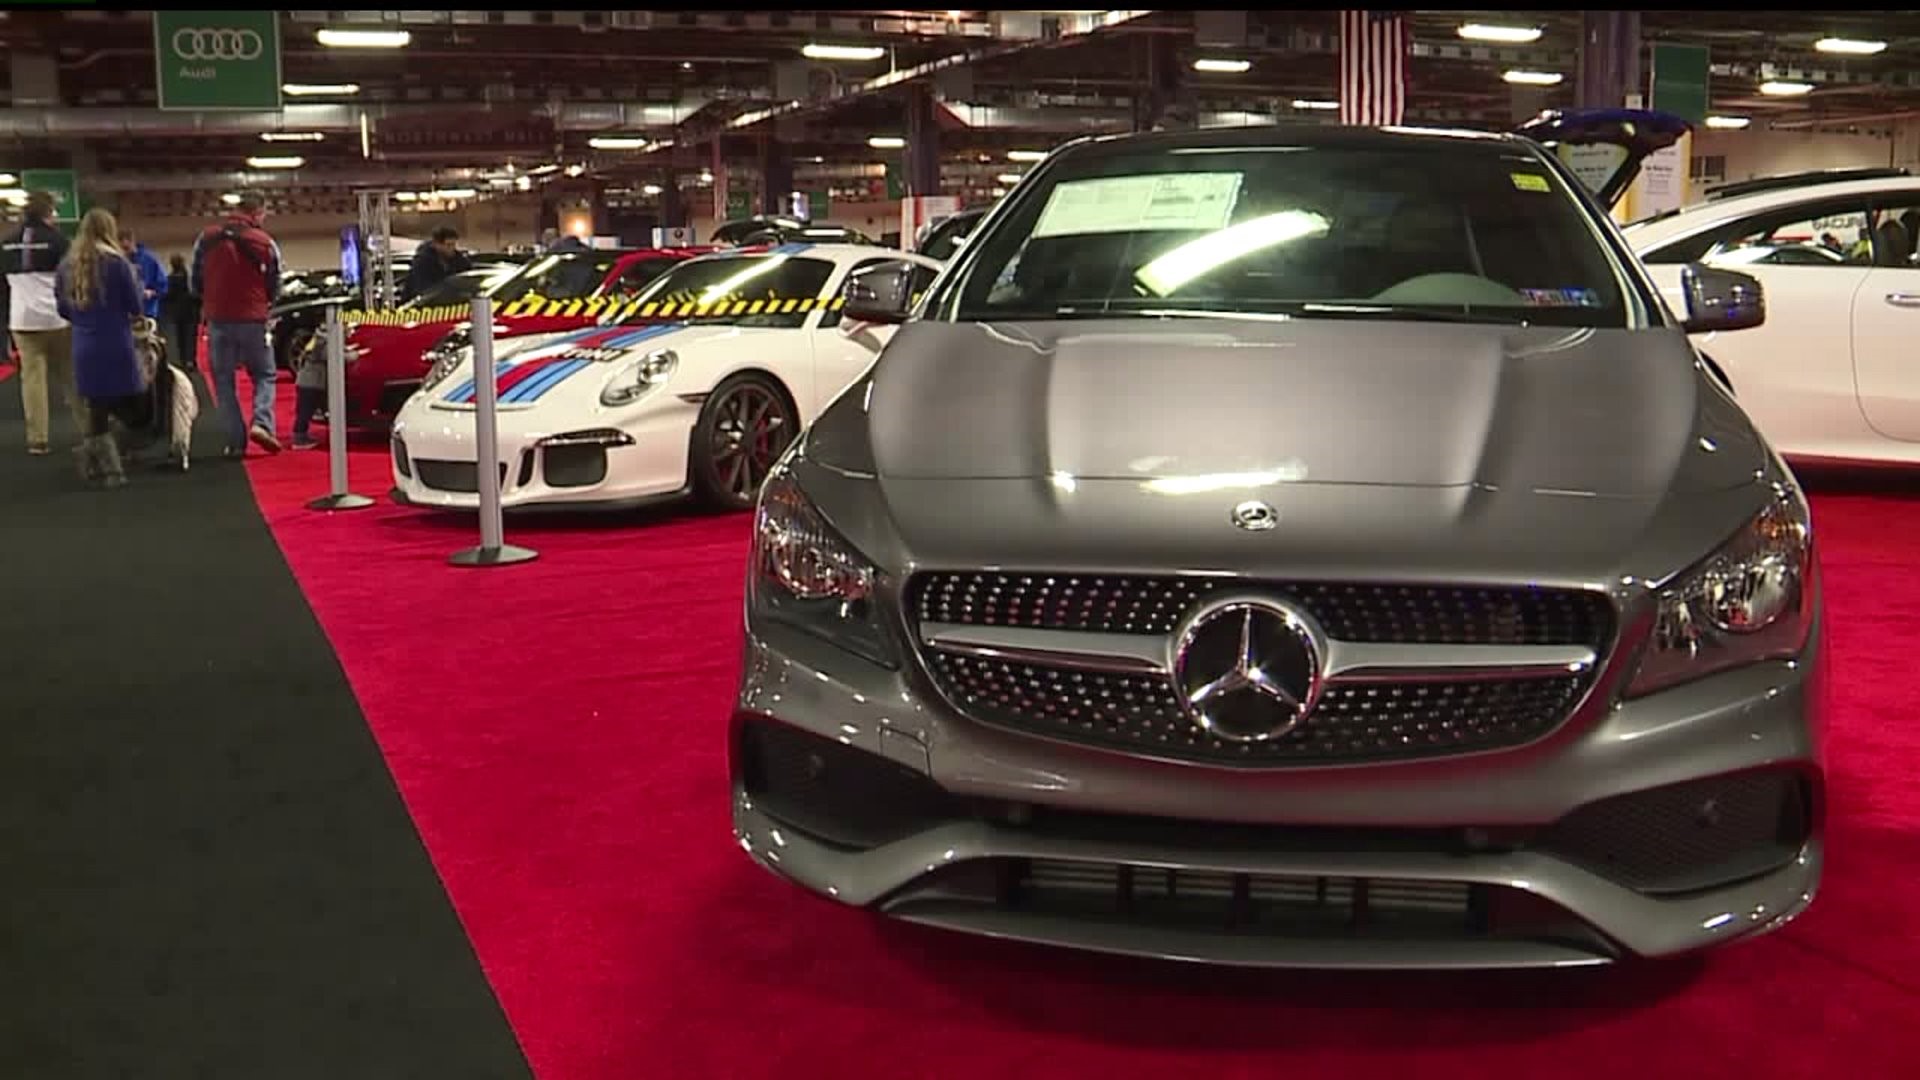 Pennsylvania Auto Show wraps up